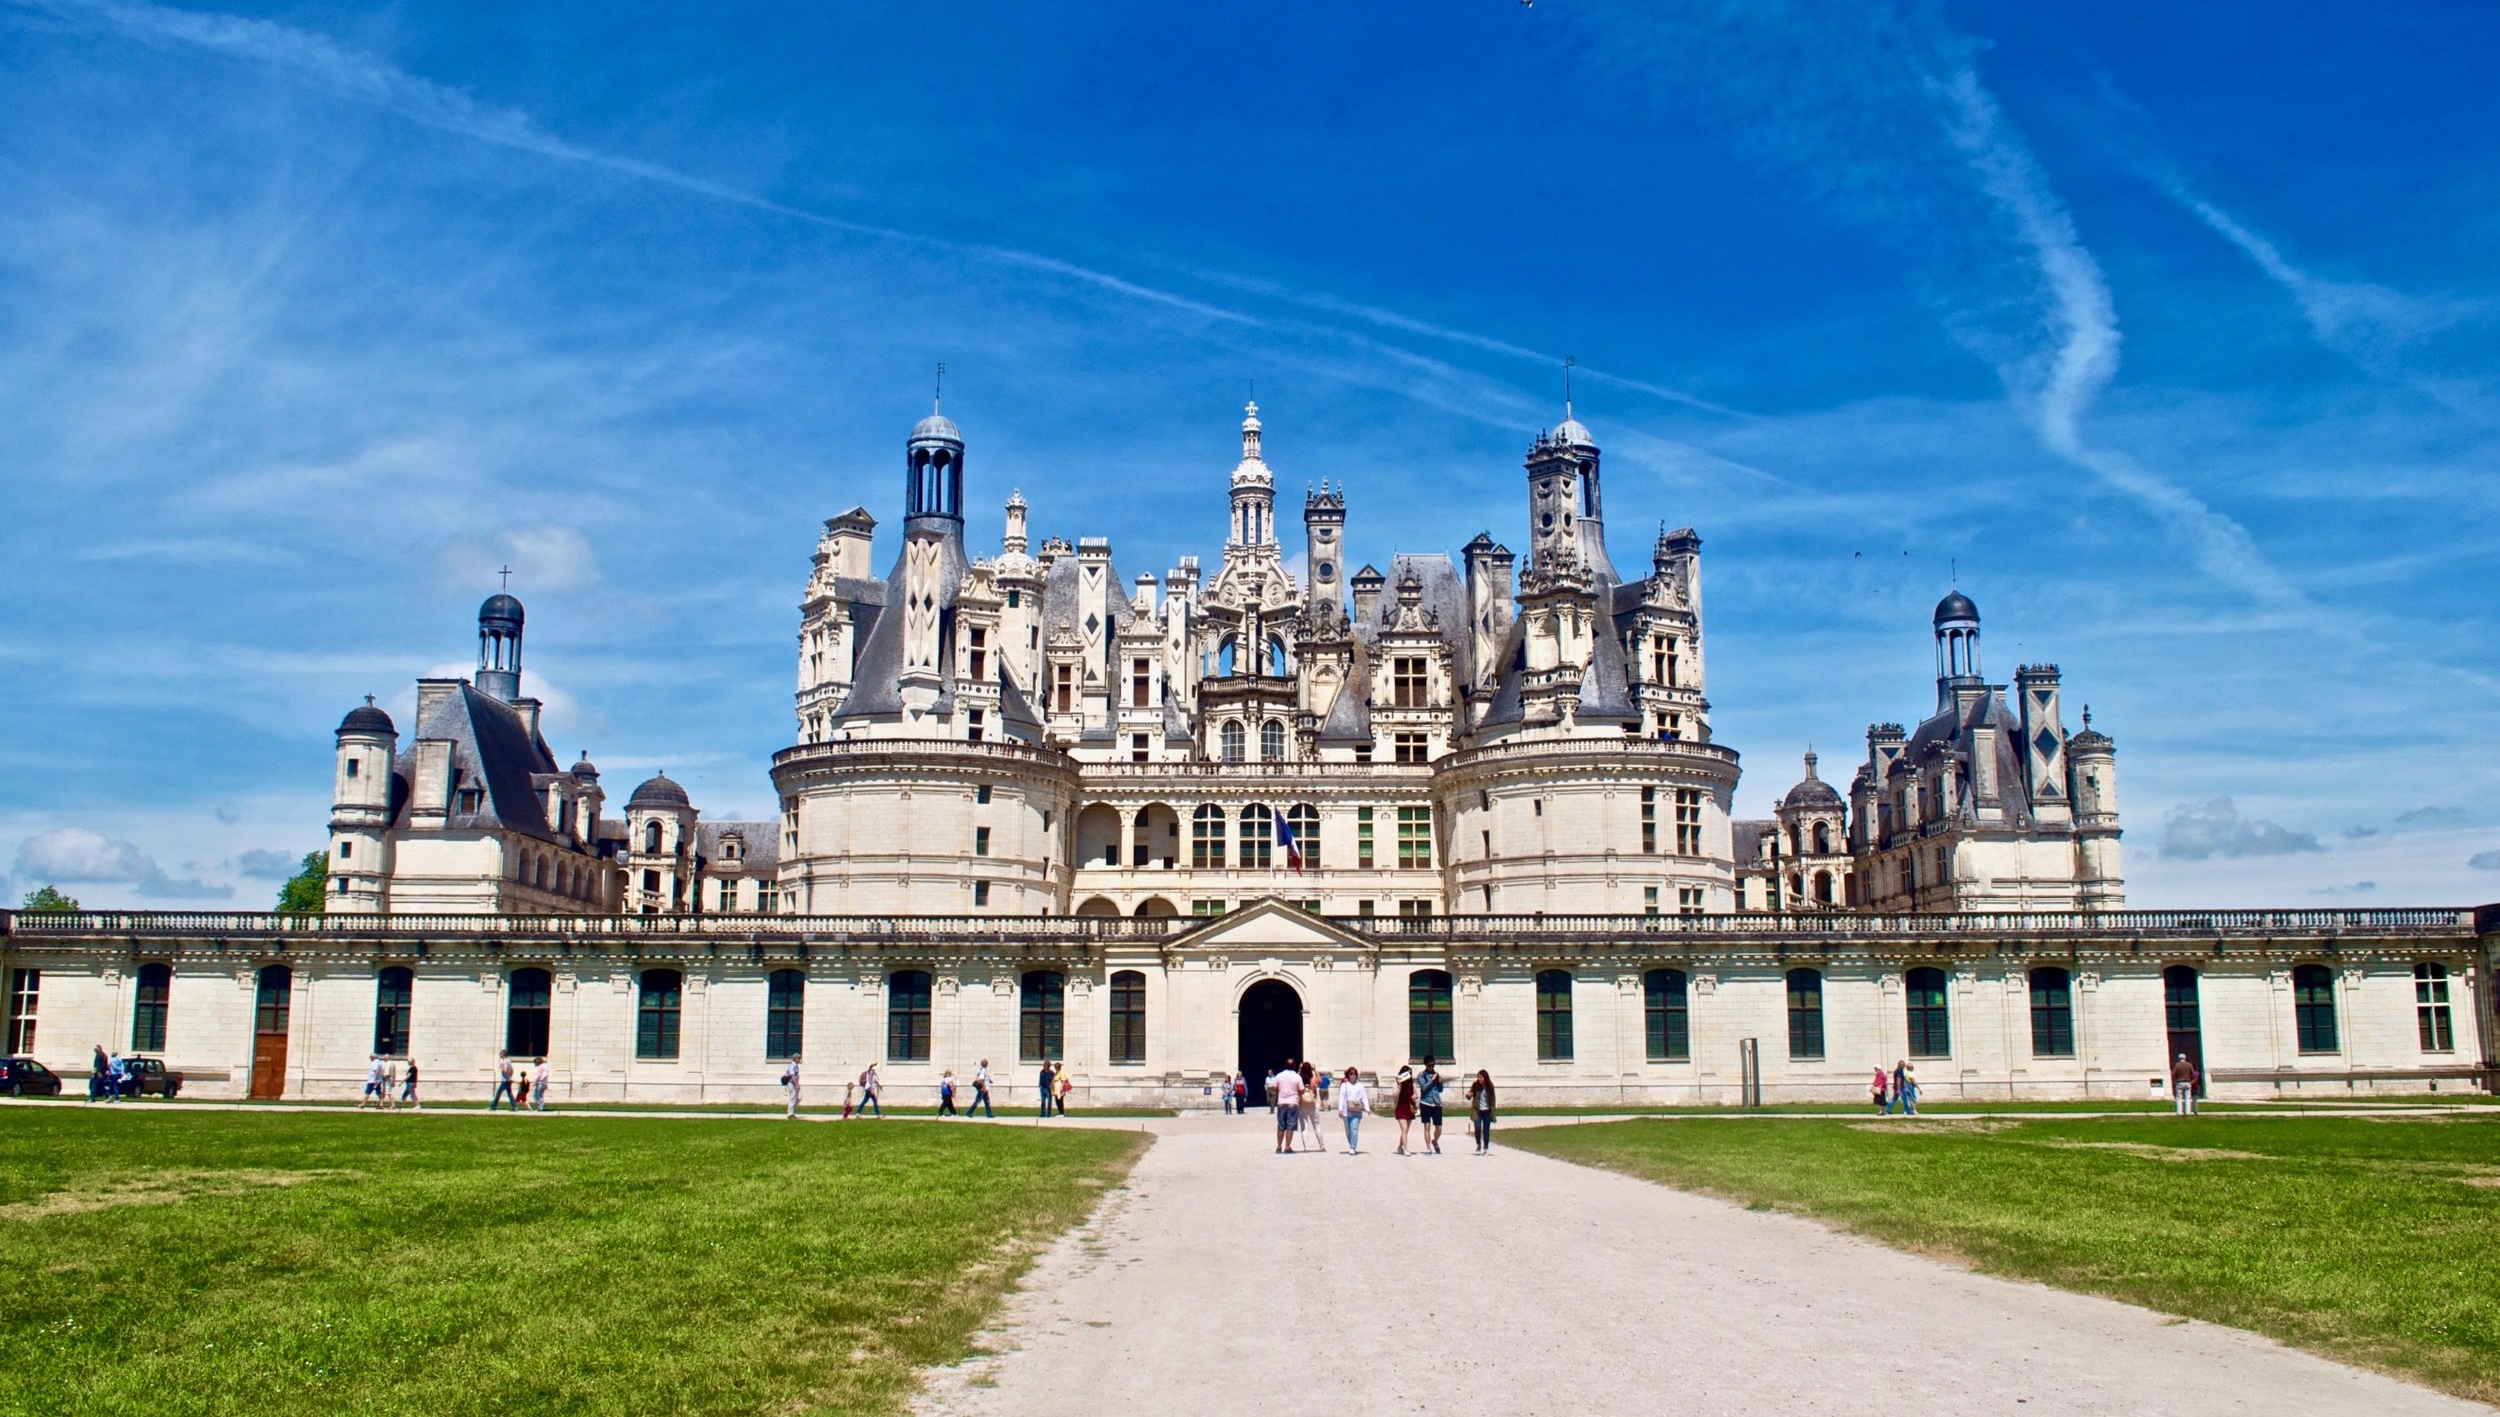 Chateau de Chambord, Loire Valley: Inspired by Leonardo da Vinci